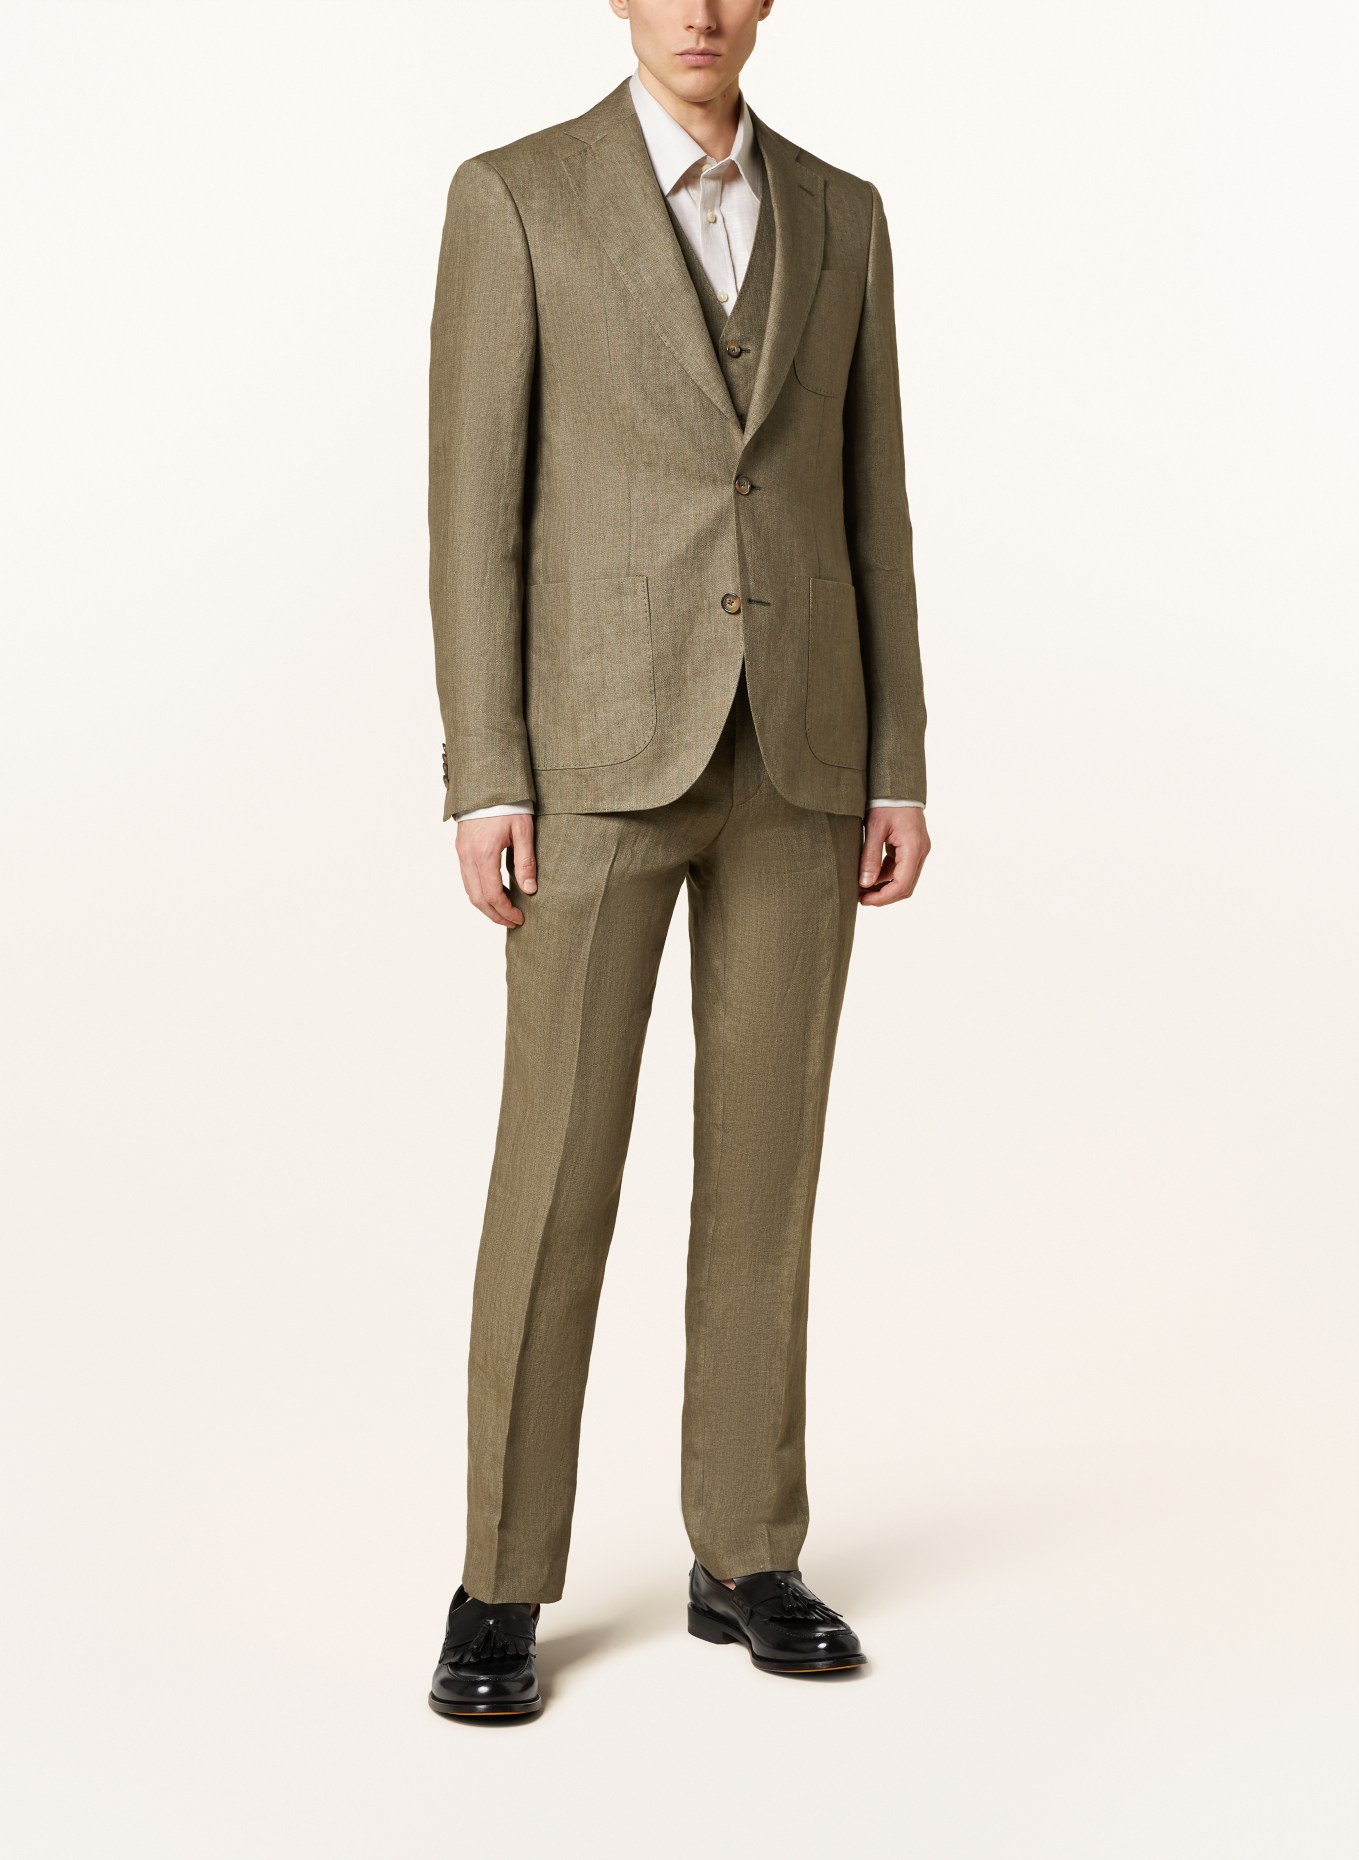 SAND COPENHAGEN Suit jacket STAR NAPOLI modern fit in linen, Color: 350 OLIVE (Image 2)